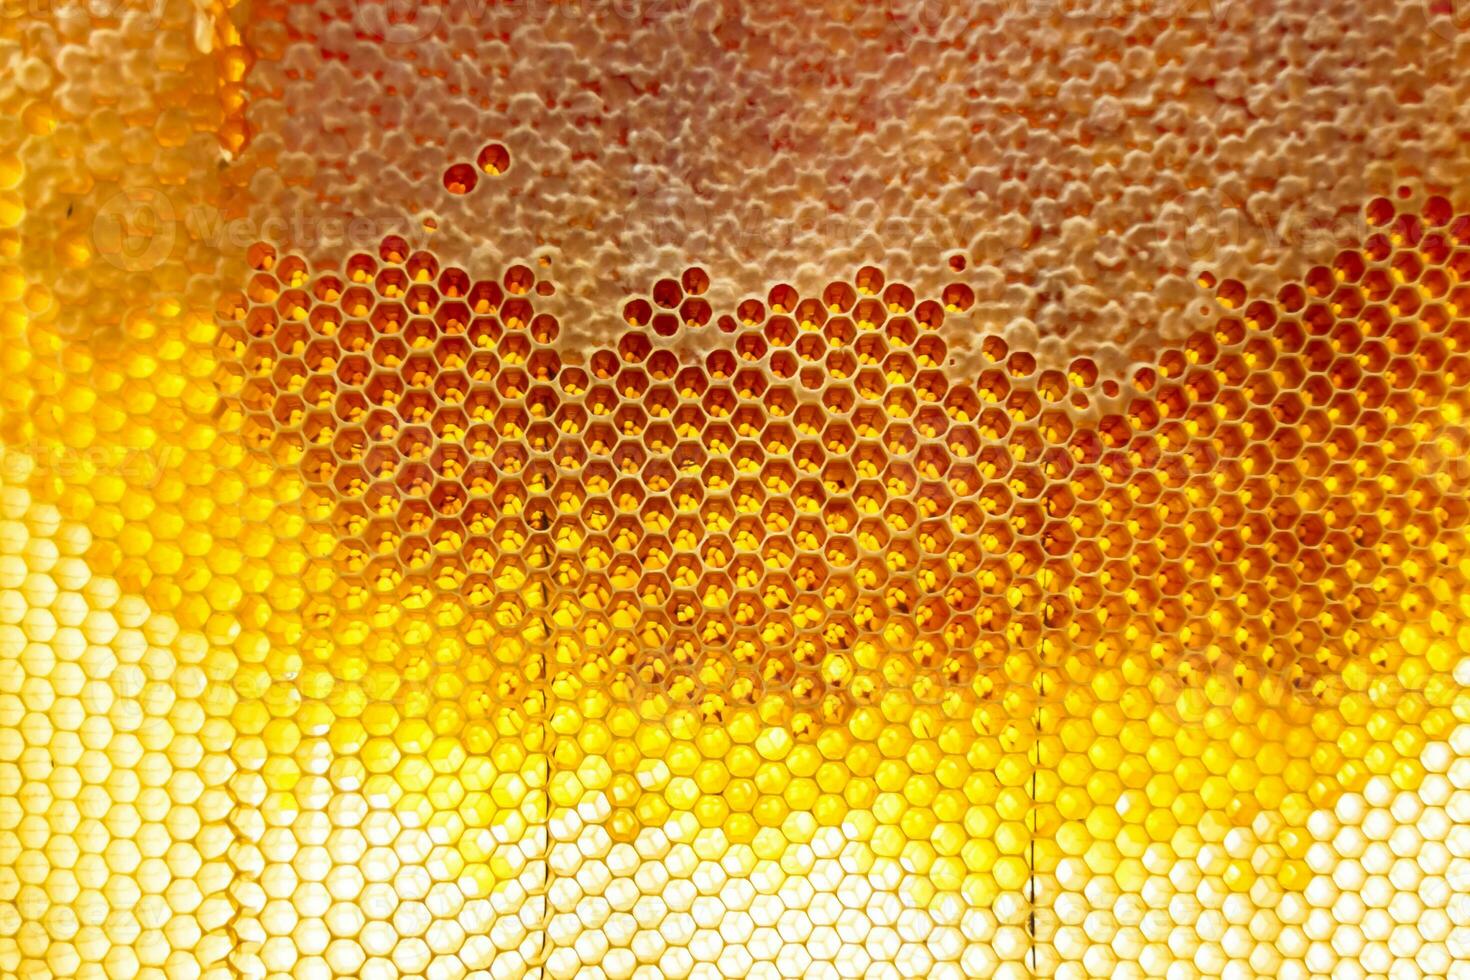 gota de mel de abelha pinga de favos de mel hexagonais cheios de néctar dourado foto